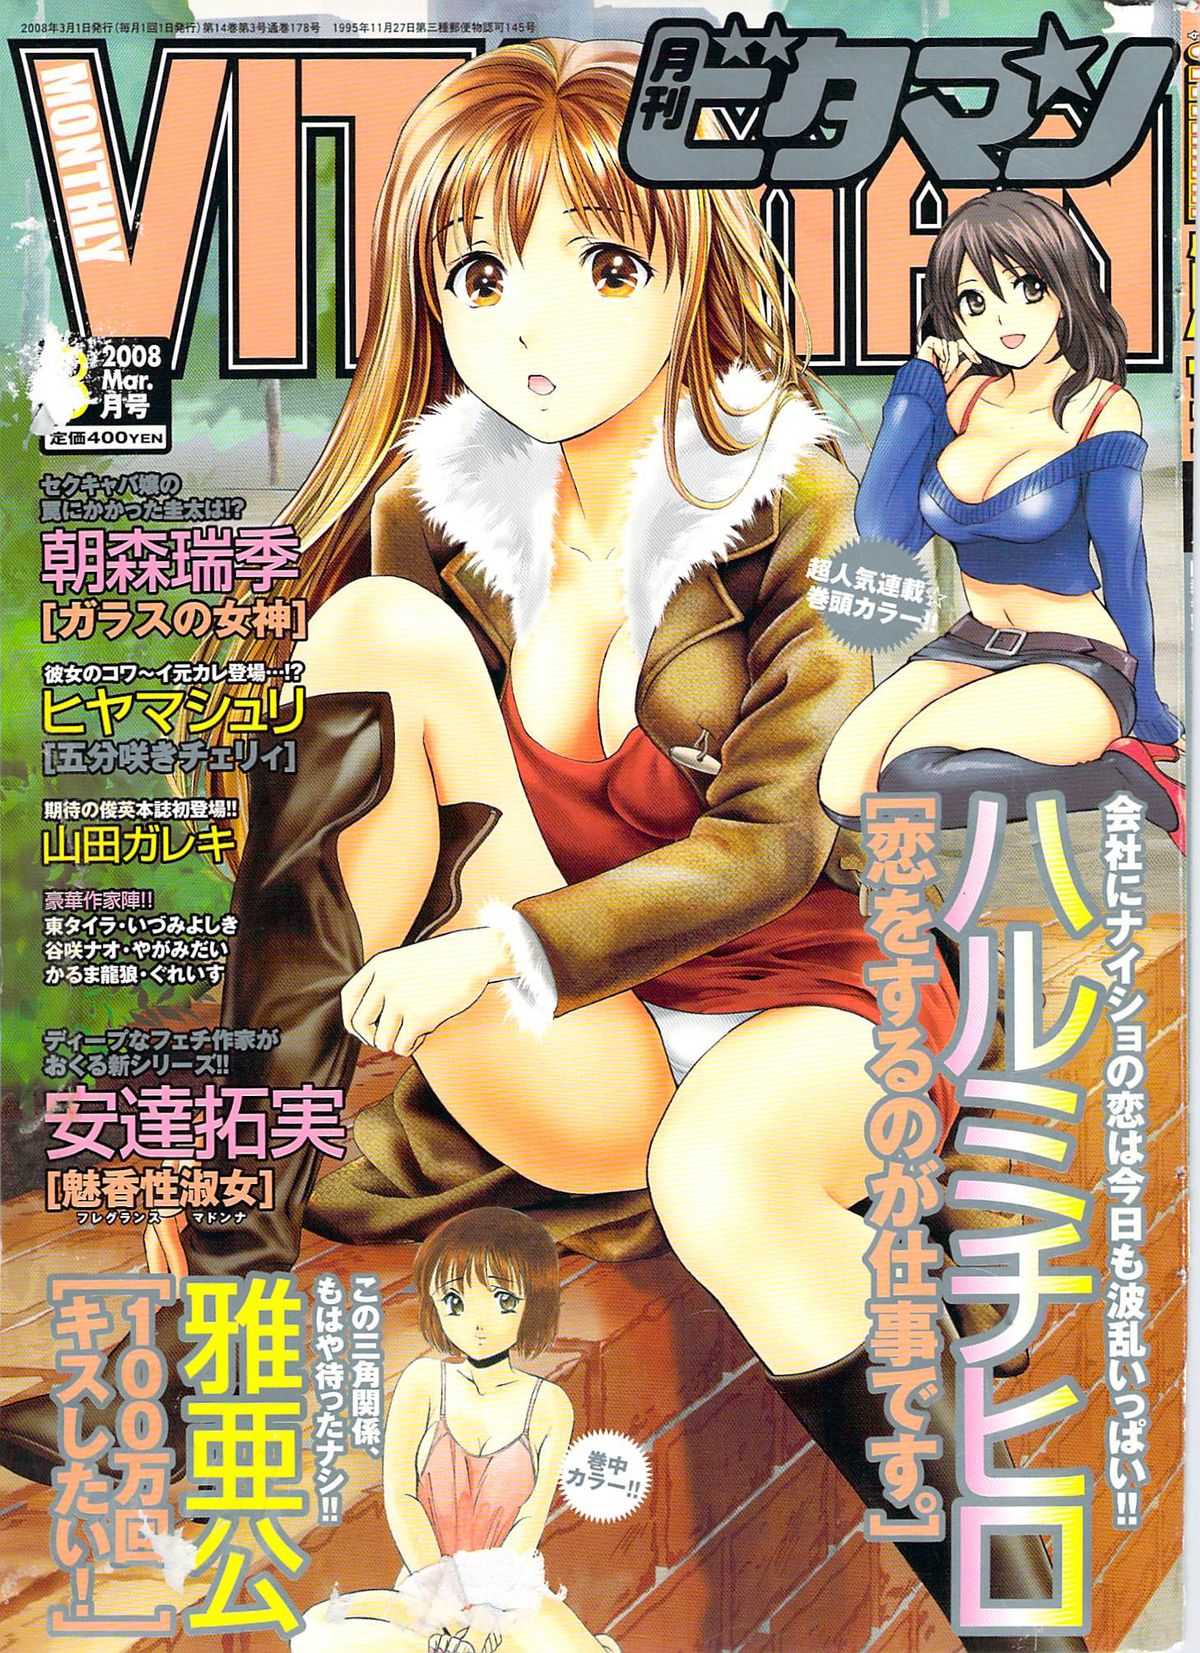 Comic Vitaman [2008/03] 